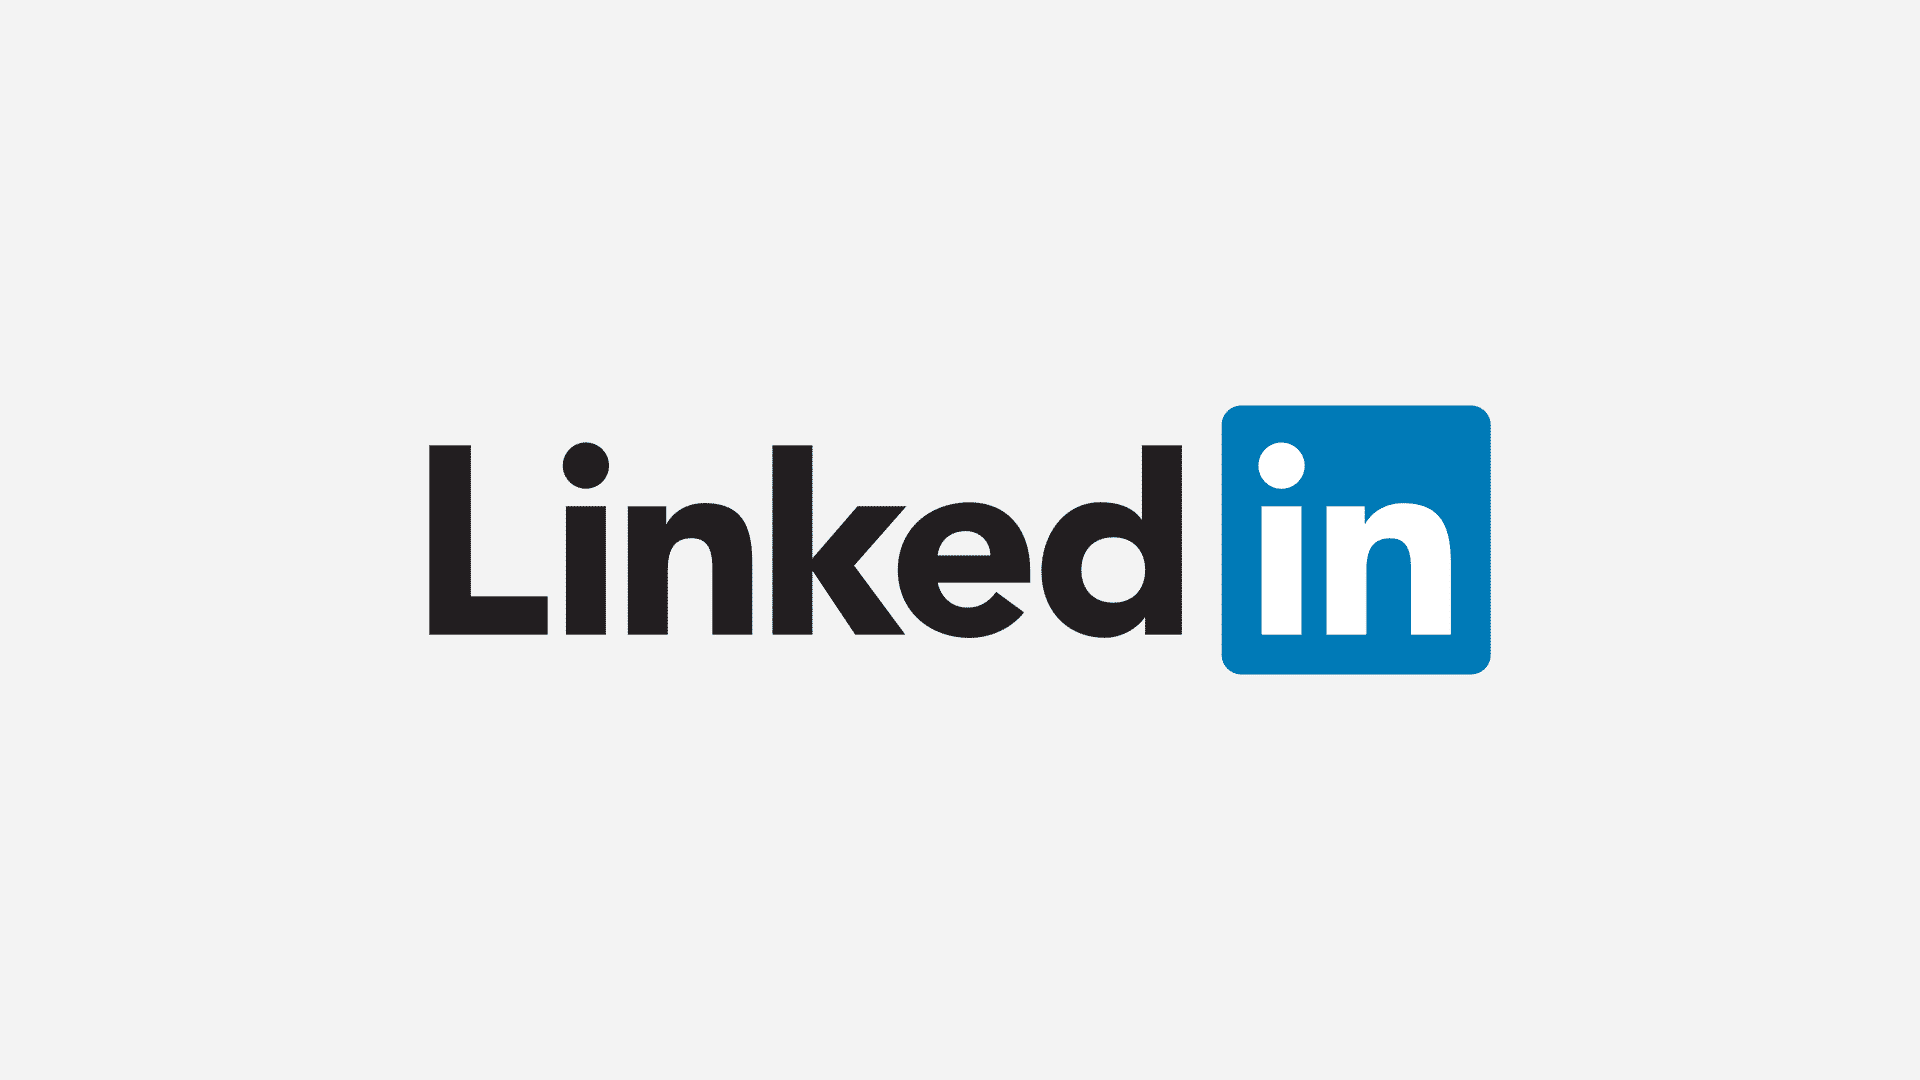 linkedin yüksek çözünürlüklü logo, linkedin sssessment, linkedin quiz cevapları